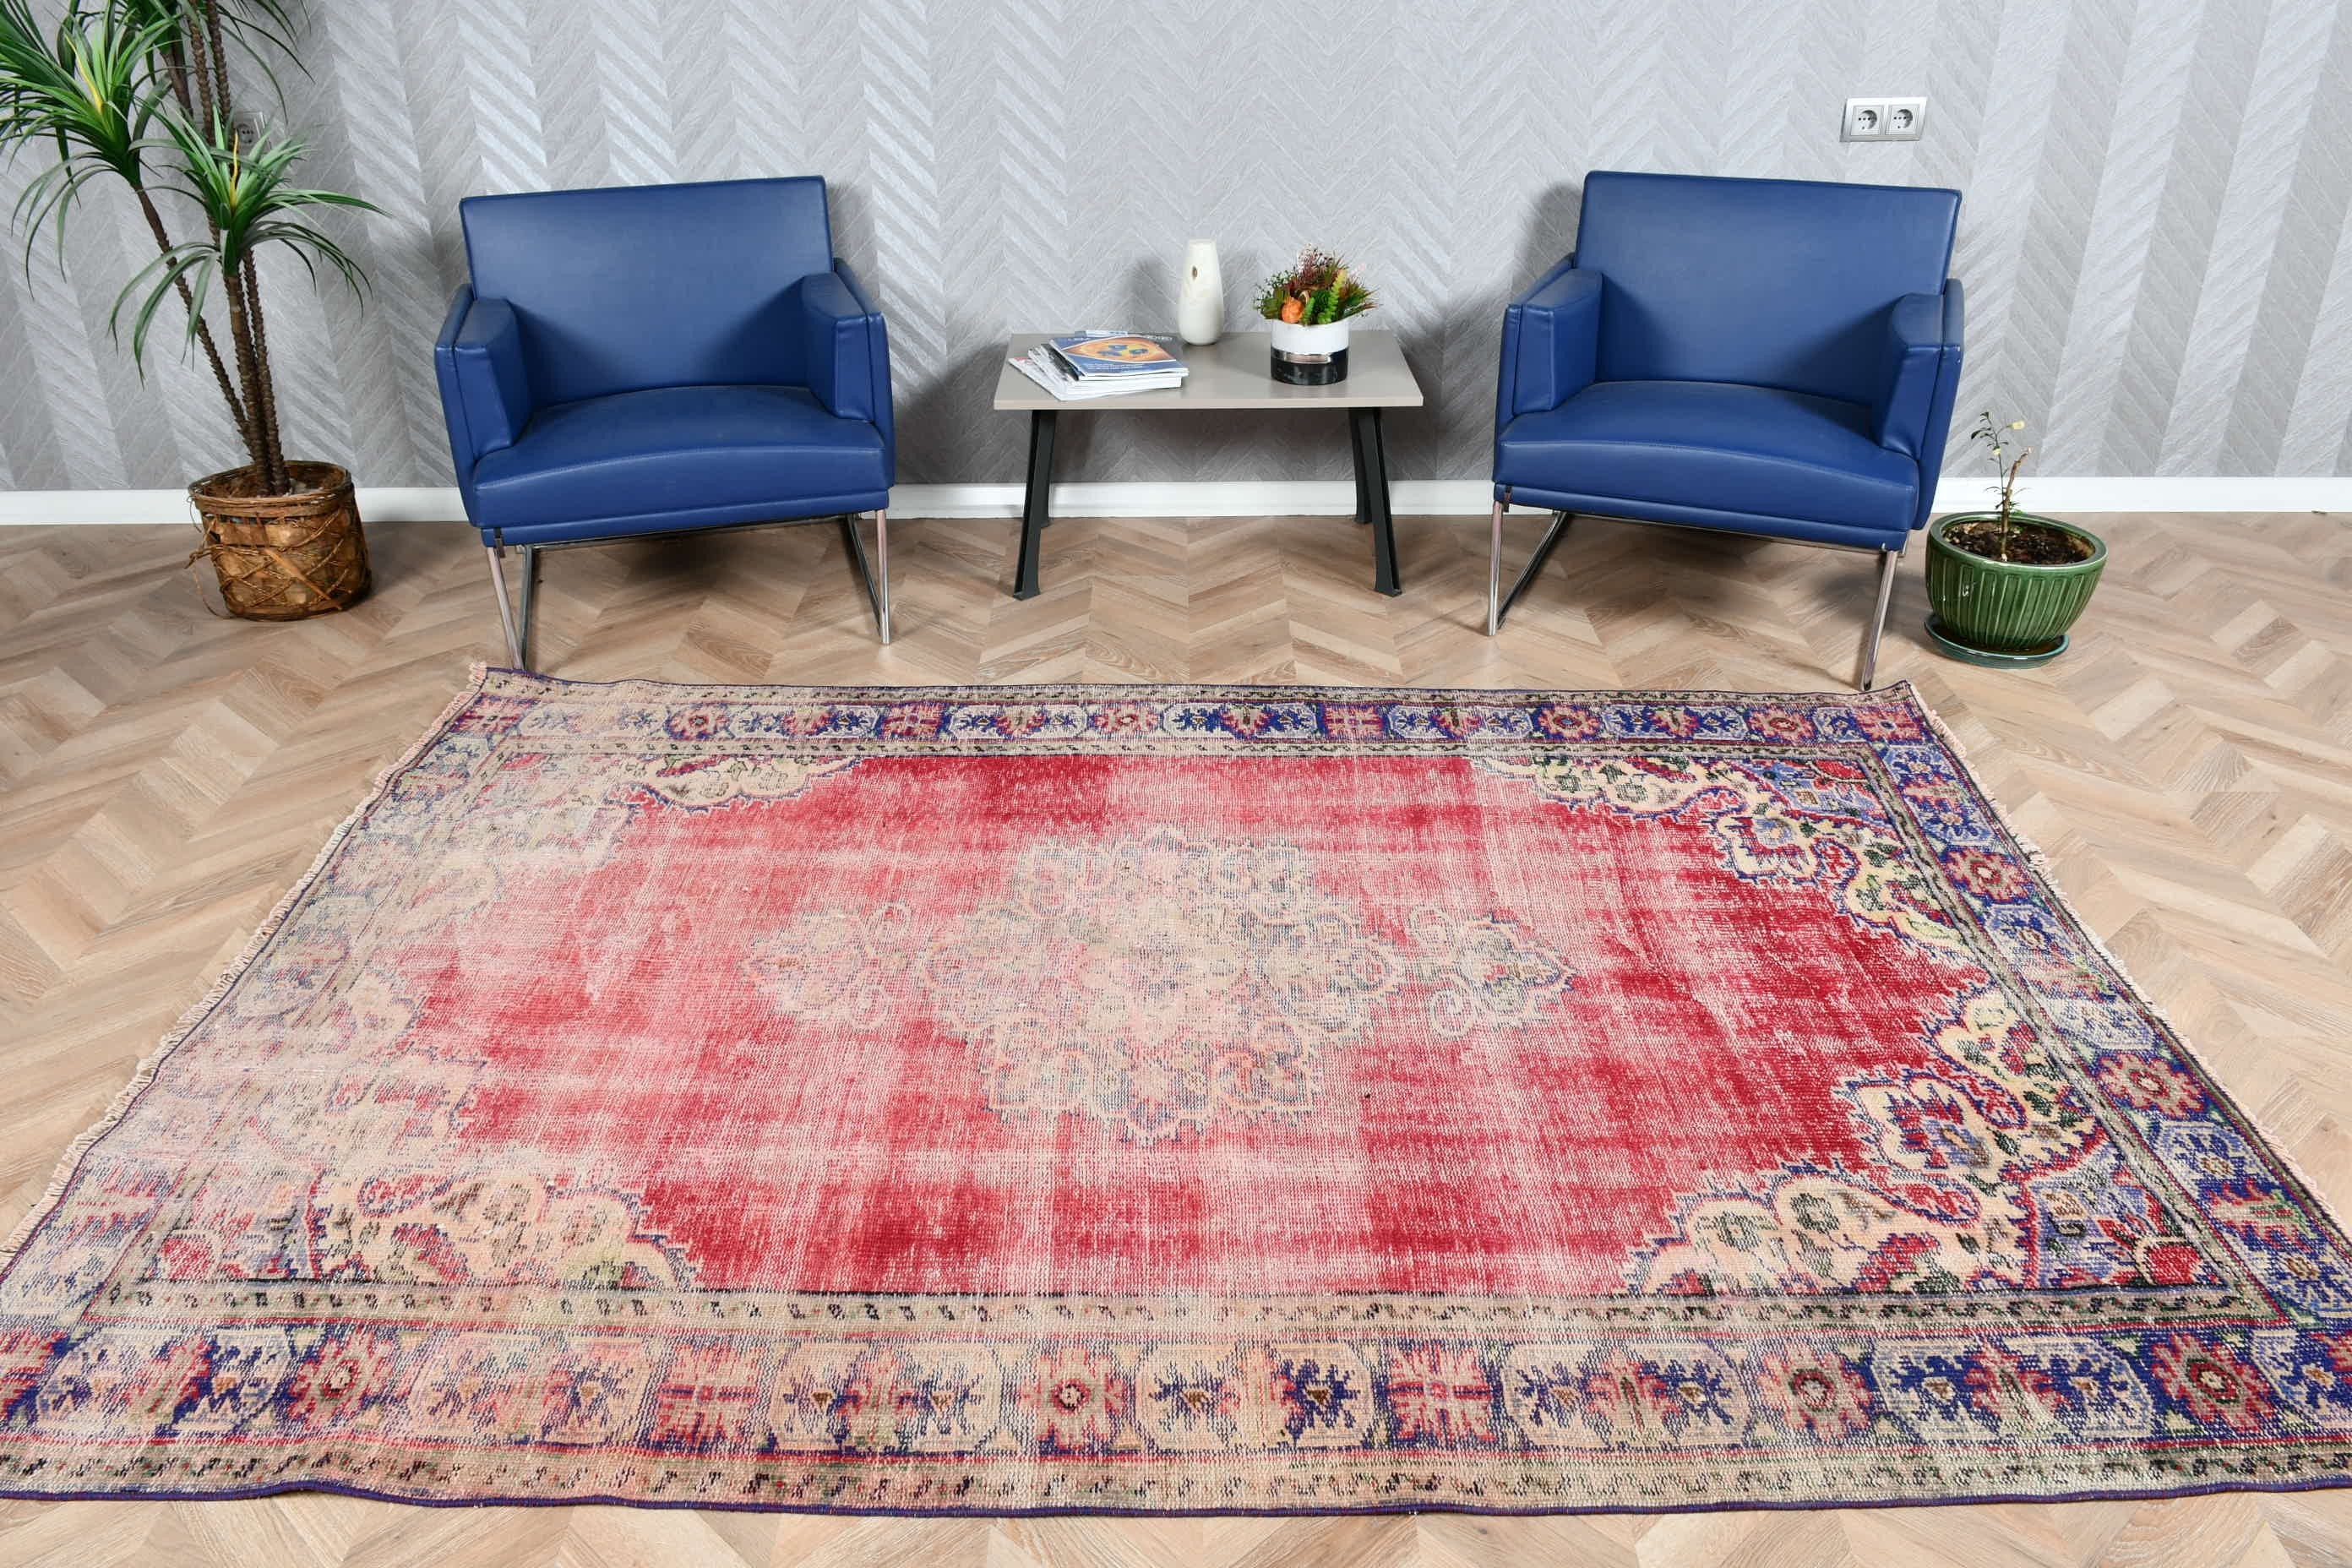 Anatolian Rug, Living Room Rugs, Vintage Rug, Red Cool Rug, Cool Rugs, Turkish Rug, Large Wool Rug Rugs, Bedroom Rug, 5.6x8.2 ft Large Rugs